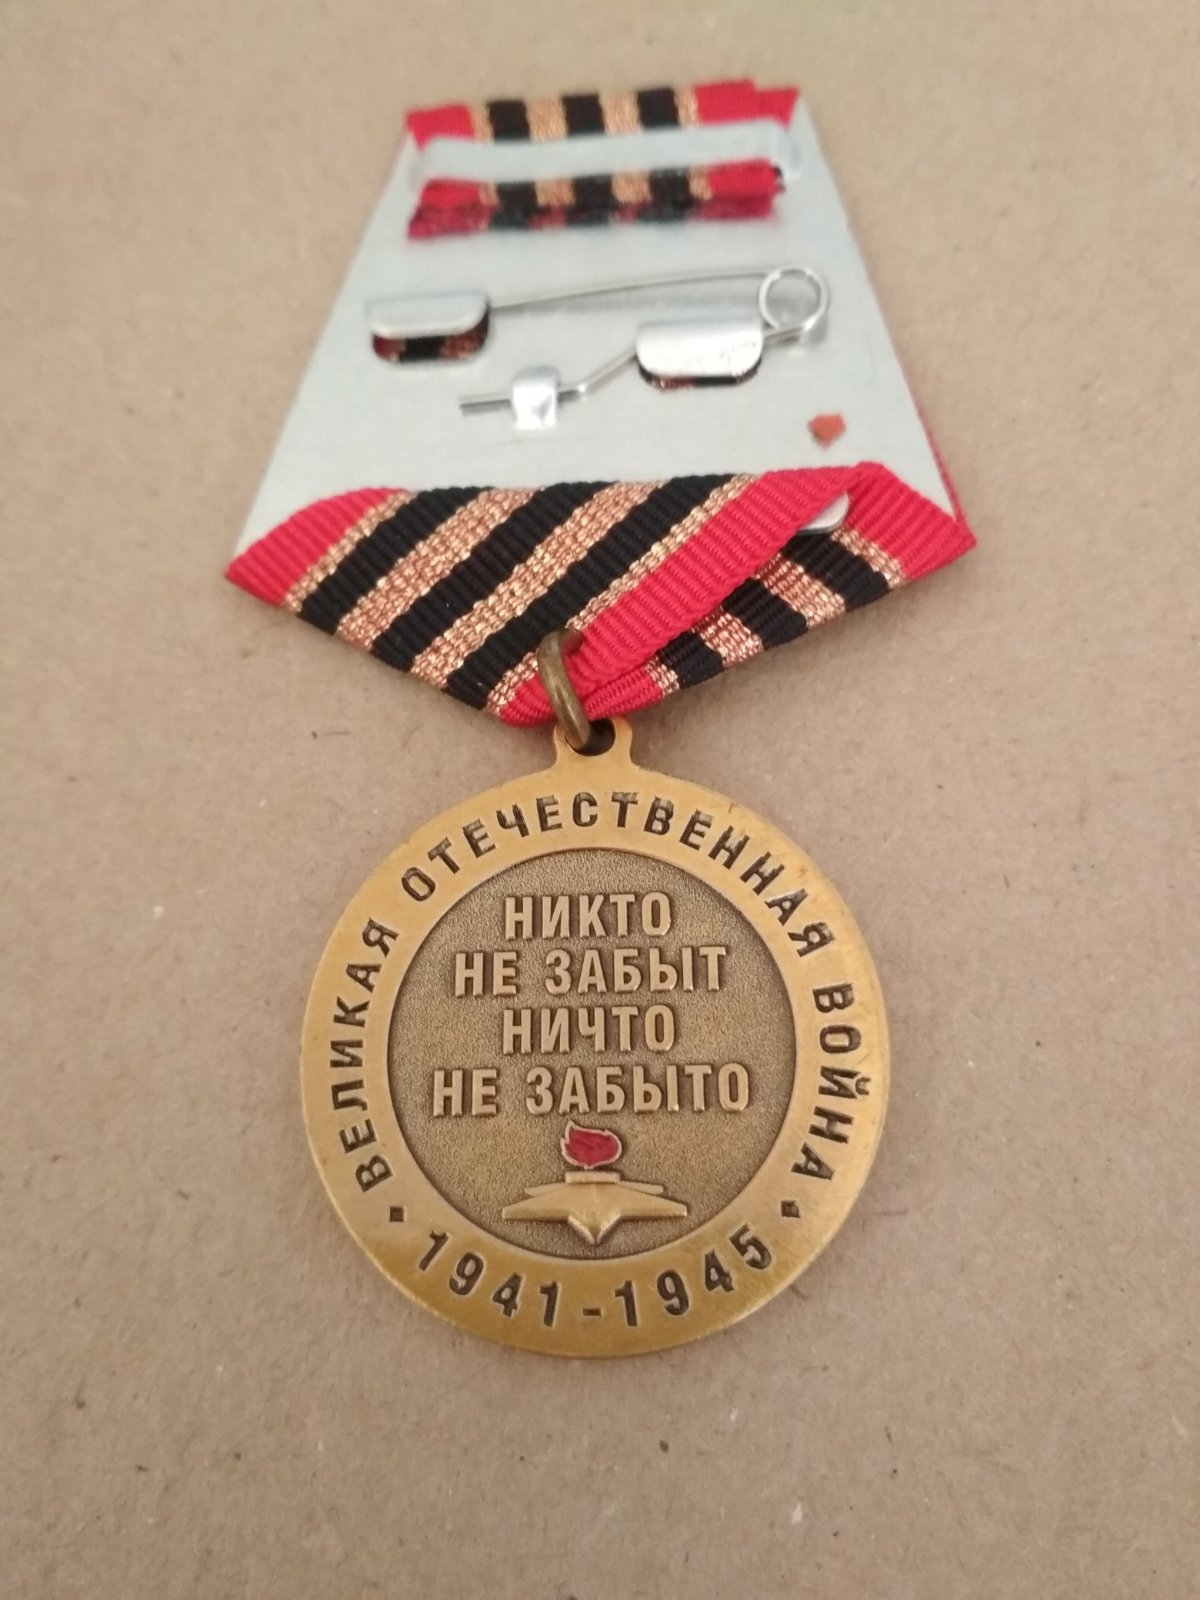 Юбилейная медаль "75 лет победы в Великой отечественной войне. Профиль Сталина"